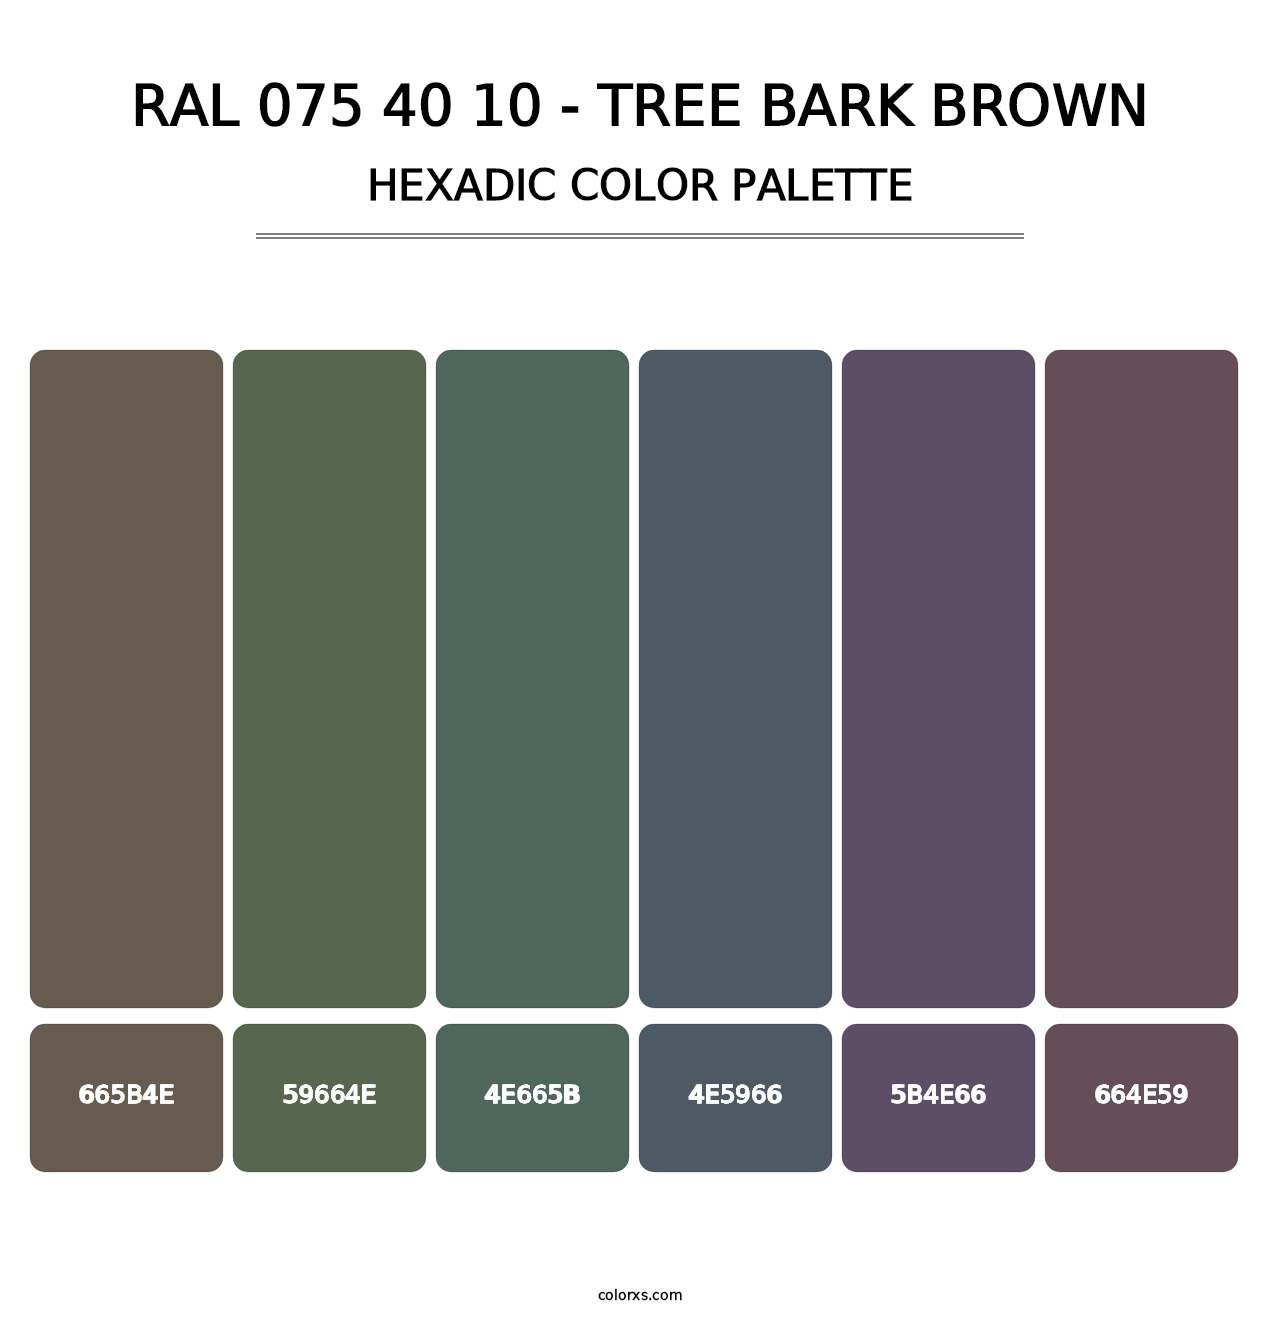 RAL 075 40 10 - Tree Bark Brown - Hexadic Color Palette